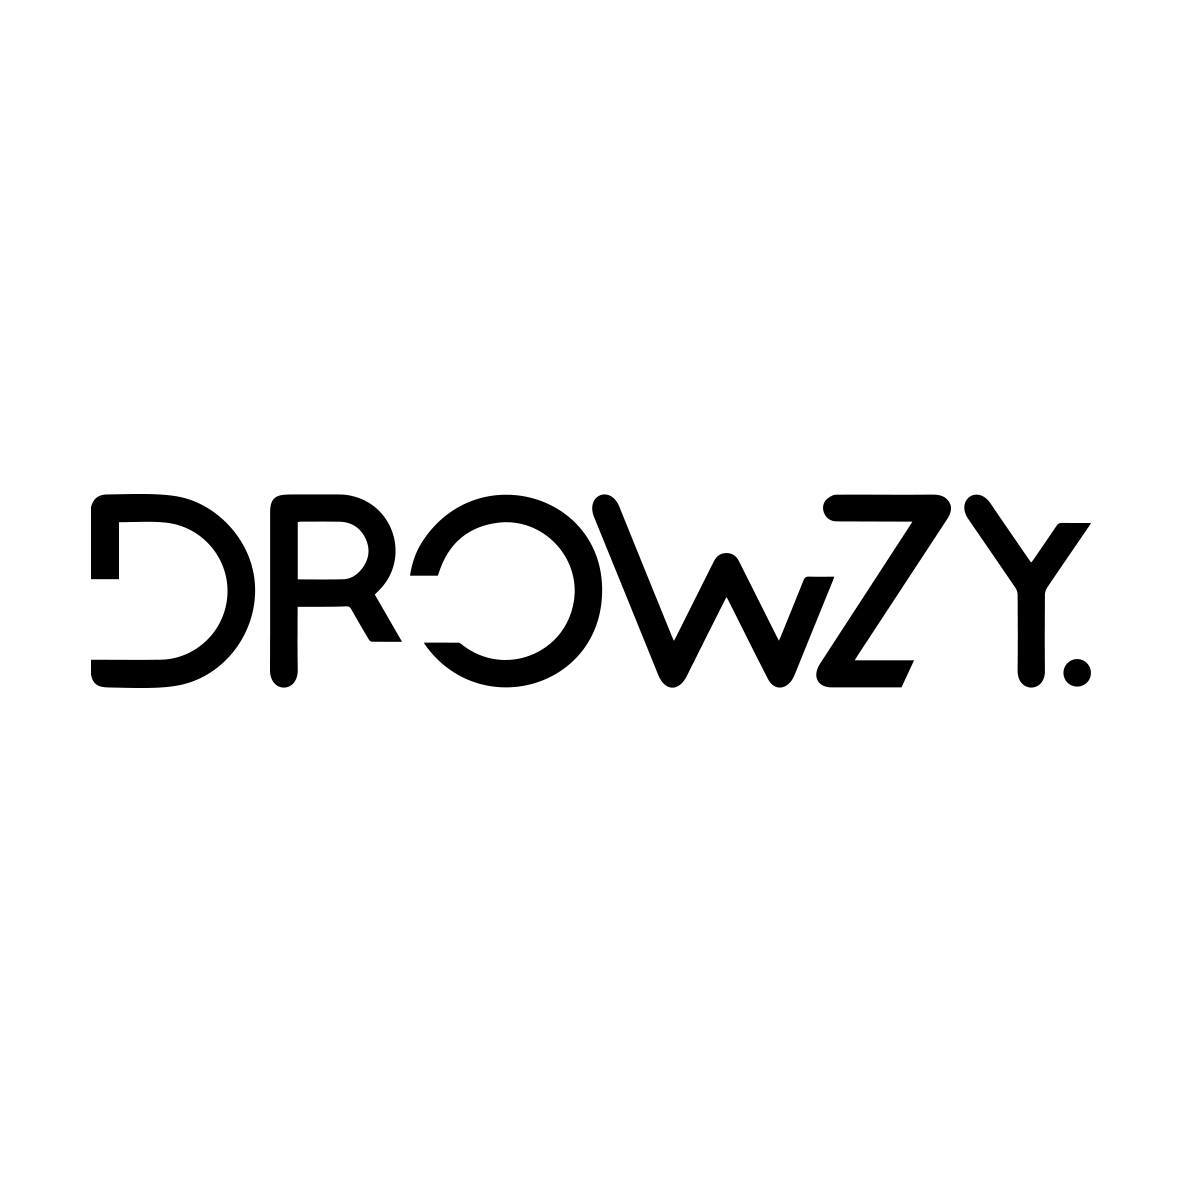 دروزي Drowzy